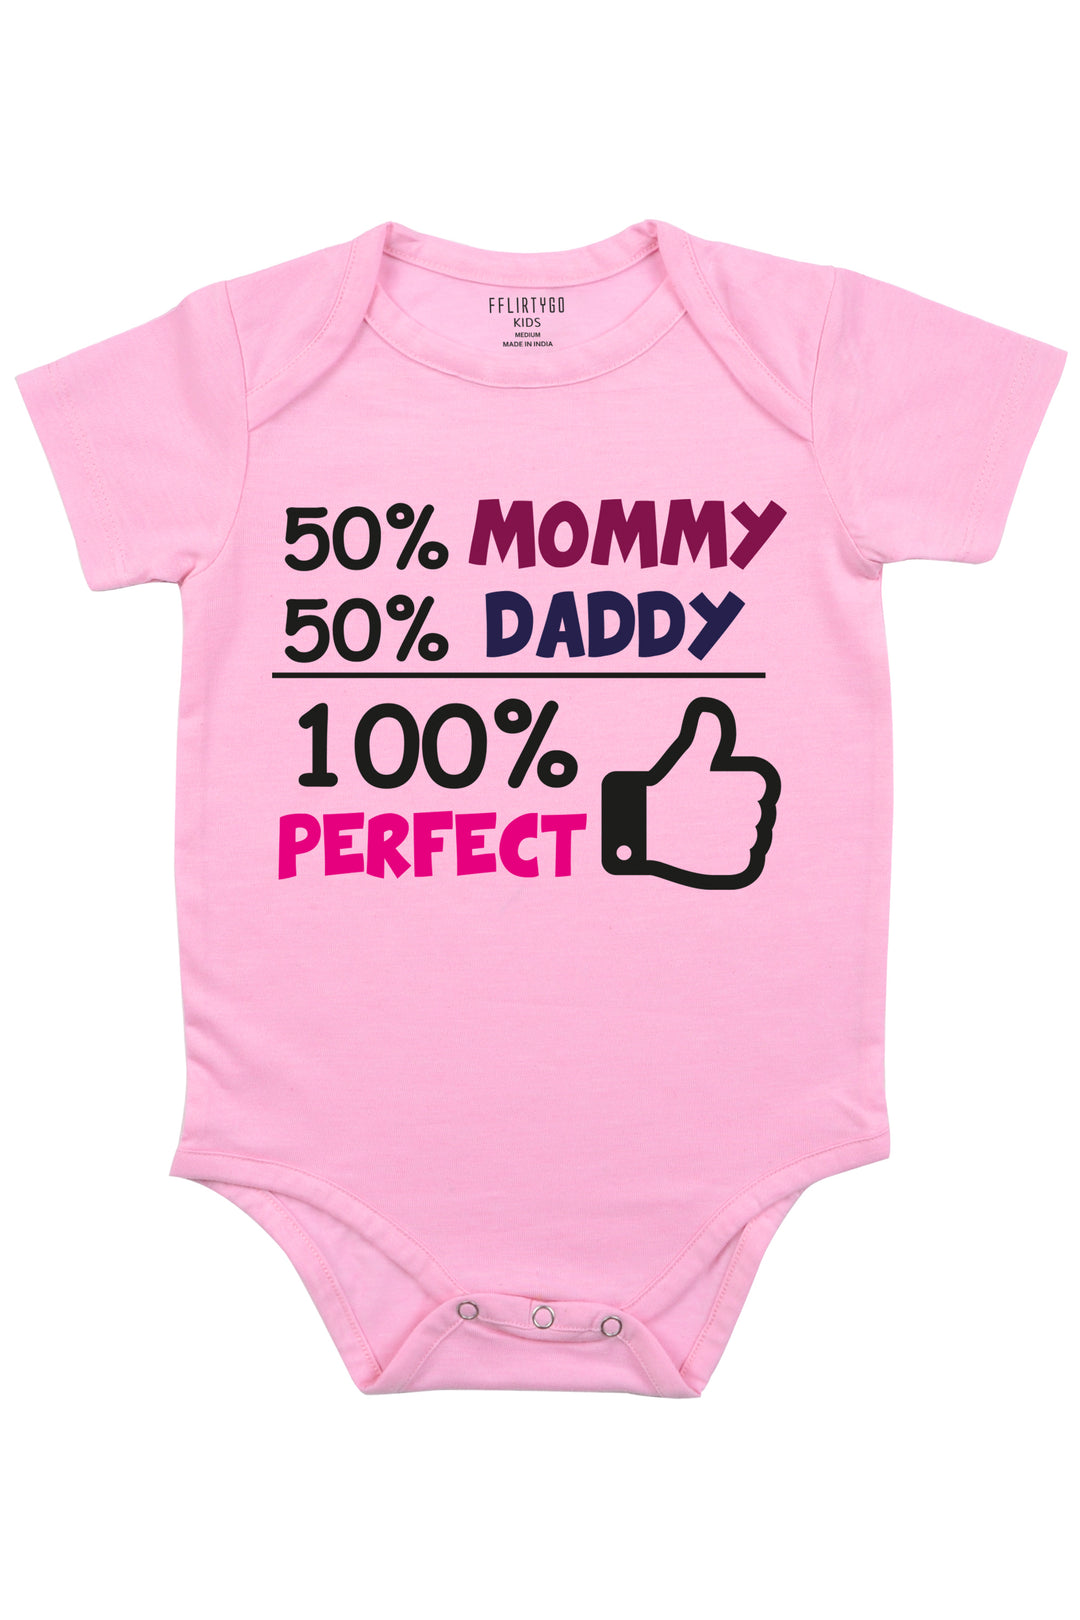 50% Mommy 50%Daddy 100% Perfect - FflirtyGo